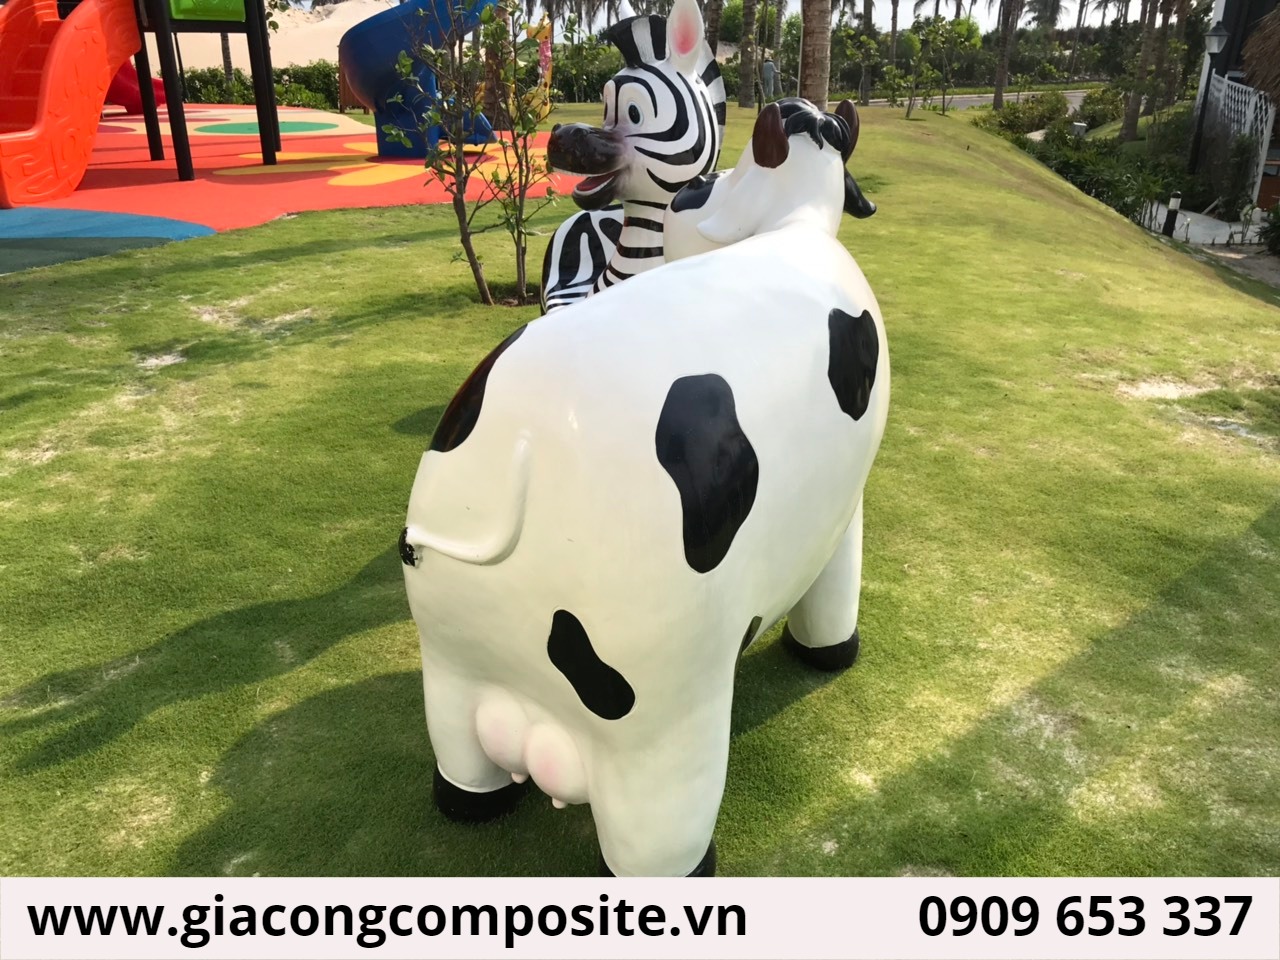 xưởng sản xuất ghế bò sữa composite tại HCM, xưởng sản xuất trực tiếp ghế bò sữa composite tại HCM,nhận làm ghế bò sữa composite theo yêu cầu,cung cấp ghế bò sữa composite rẻ nhất tại HCM,những địa chỉ uy tín sản xuất  ghế conposite tại HCM, ghế hoạt hình composite giá rẻ tại HCM, ghế nhựa composite hoạt hình cao cấp, ghế mô hình bằng composite đẹp, ghế động vật ngoài trời composite cao cấp, ghế mầm non composite, ghế công viên composite đẹp, ghế công viên composite dễ thương , ghế thú bằng composite cao cấp,